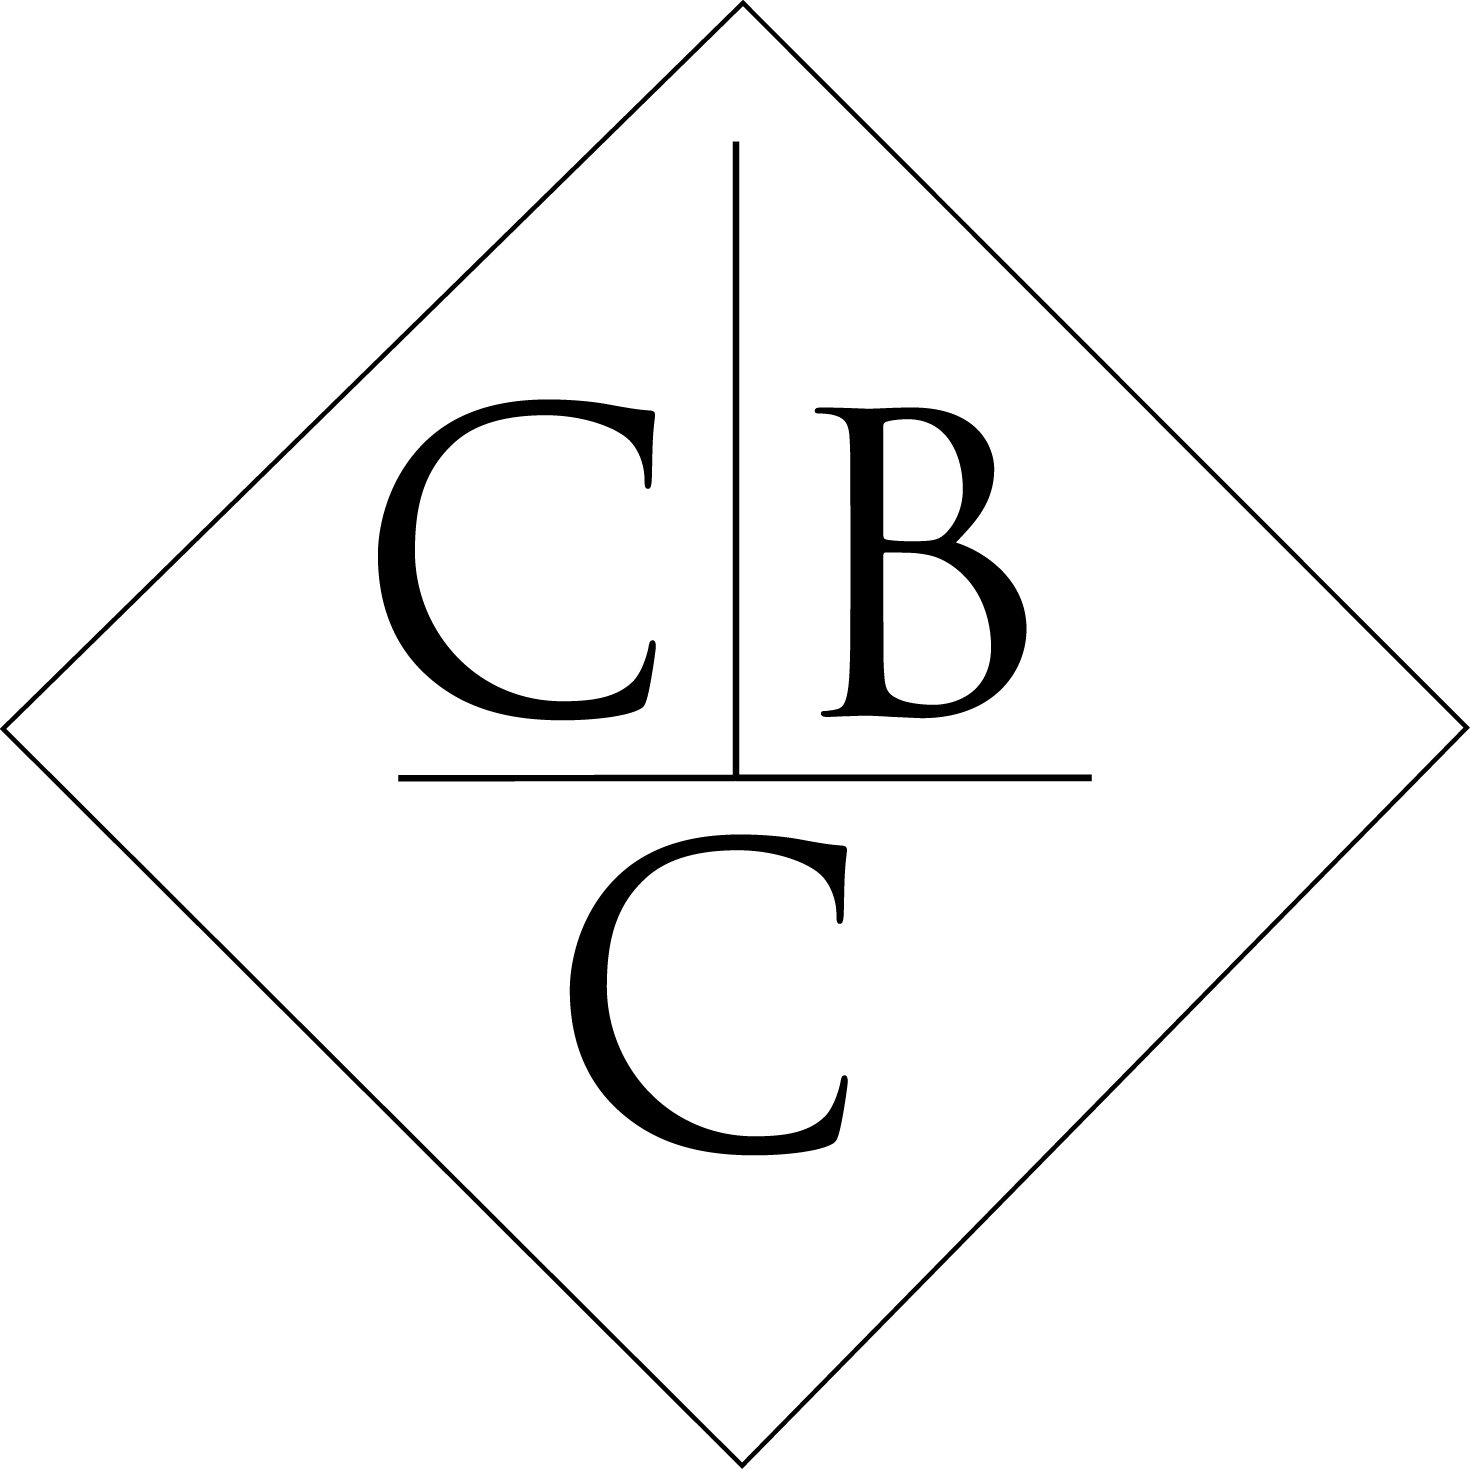  CBC